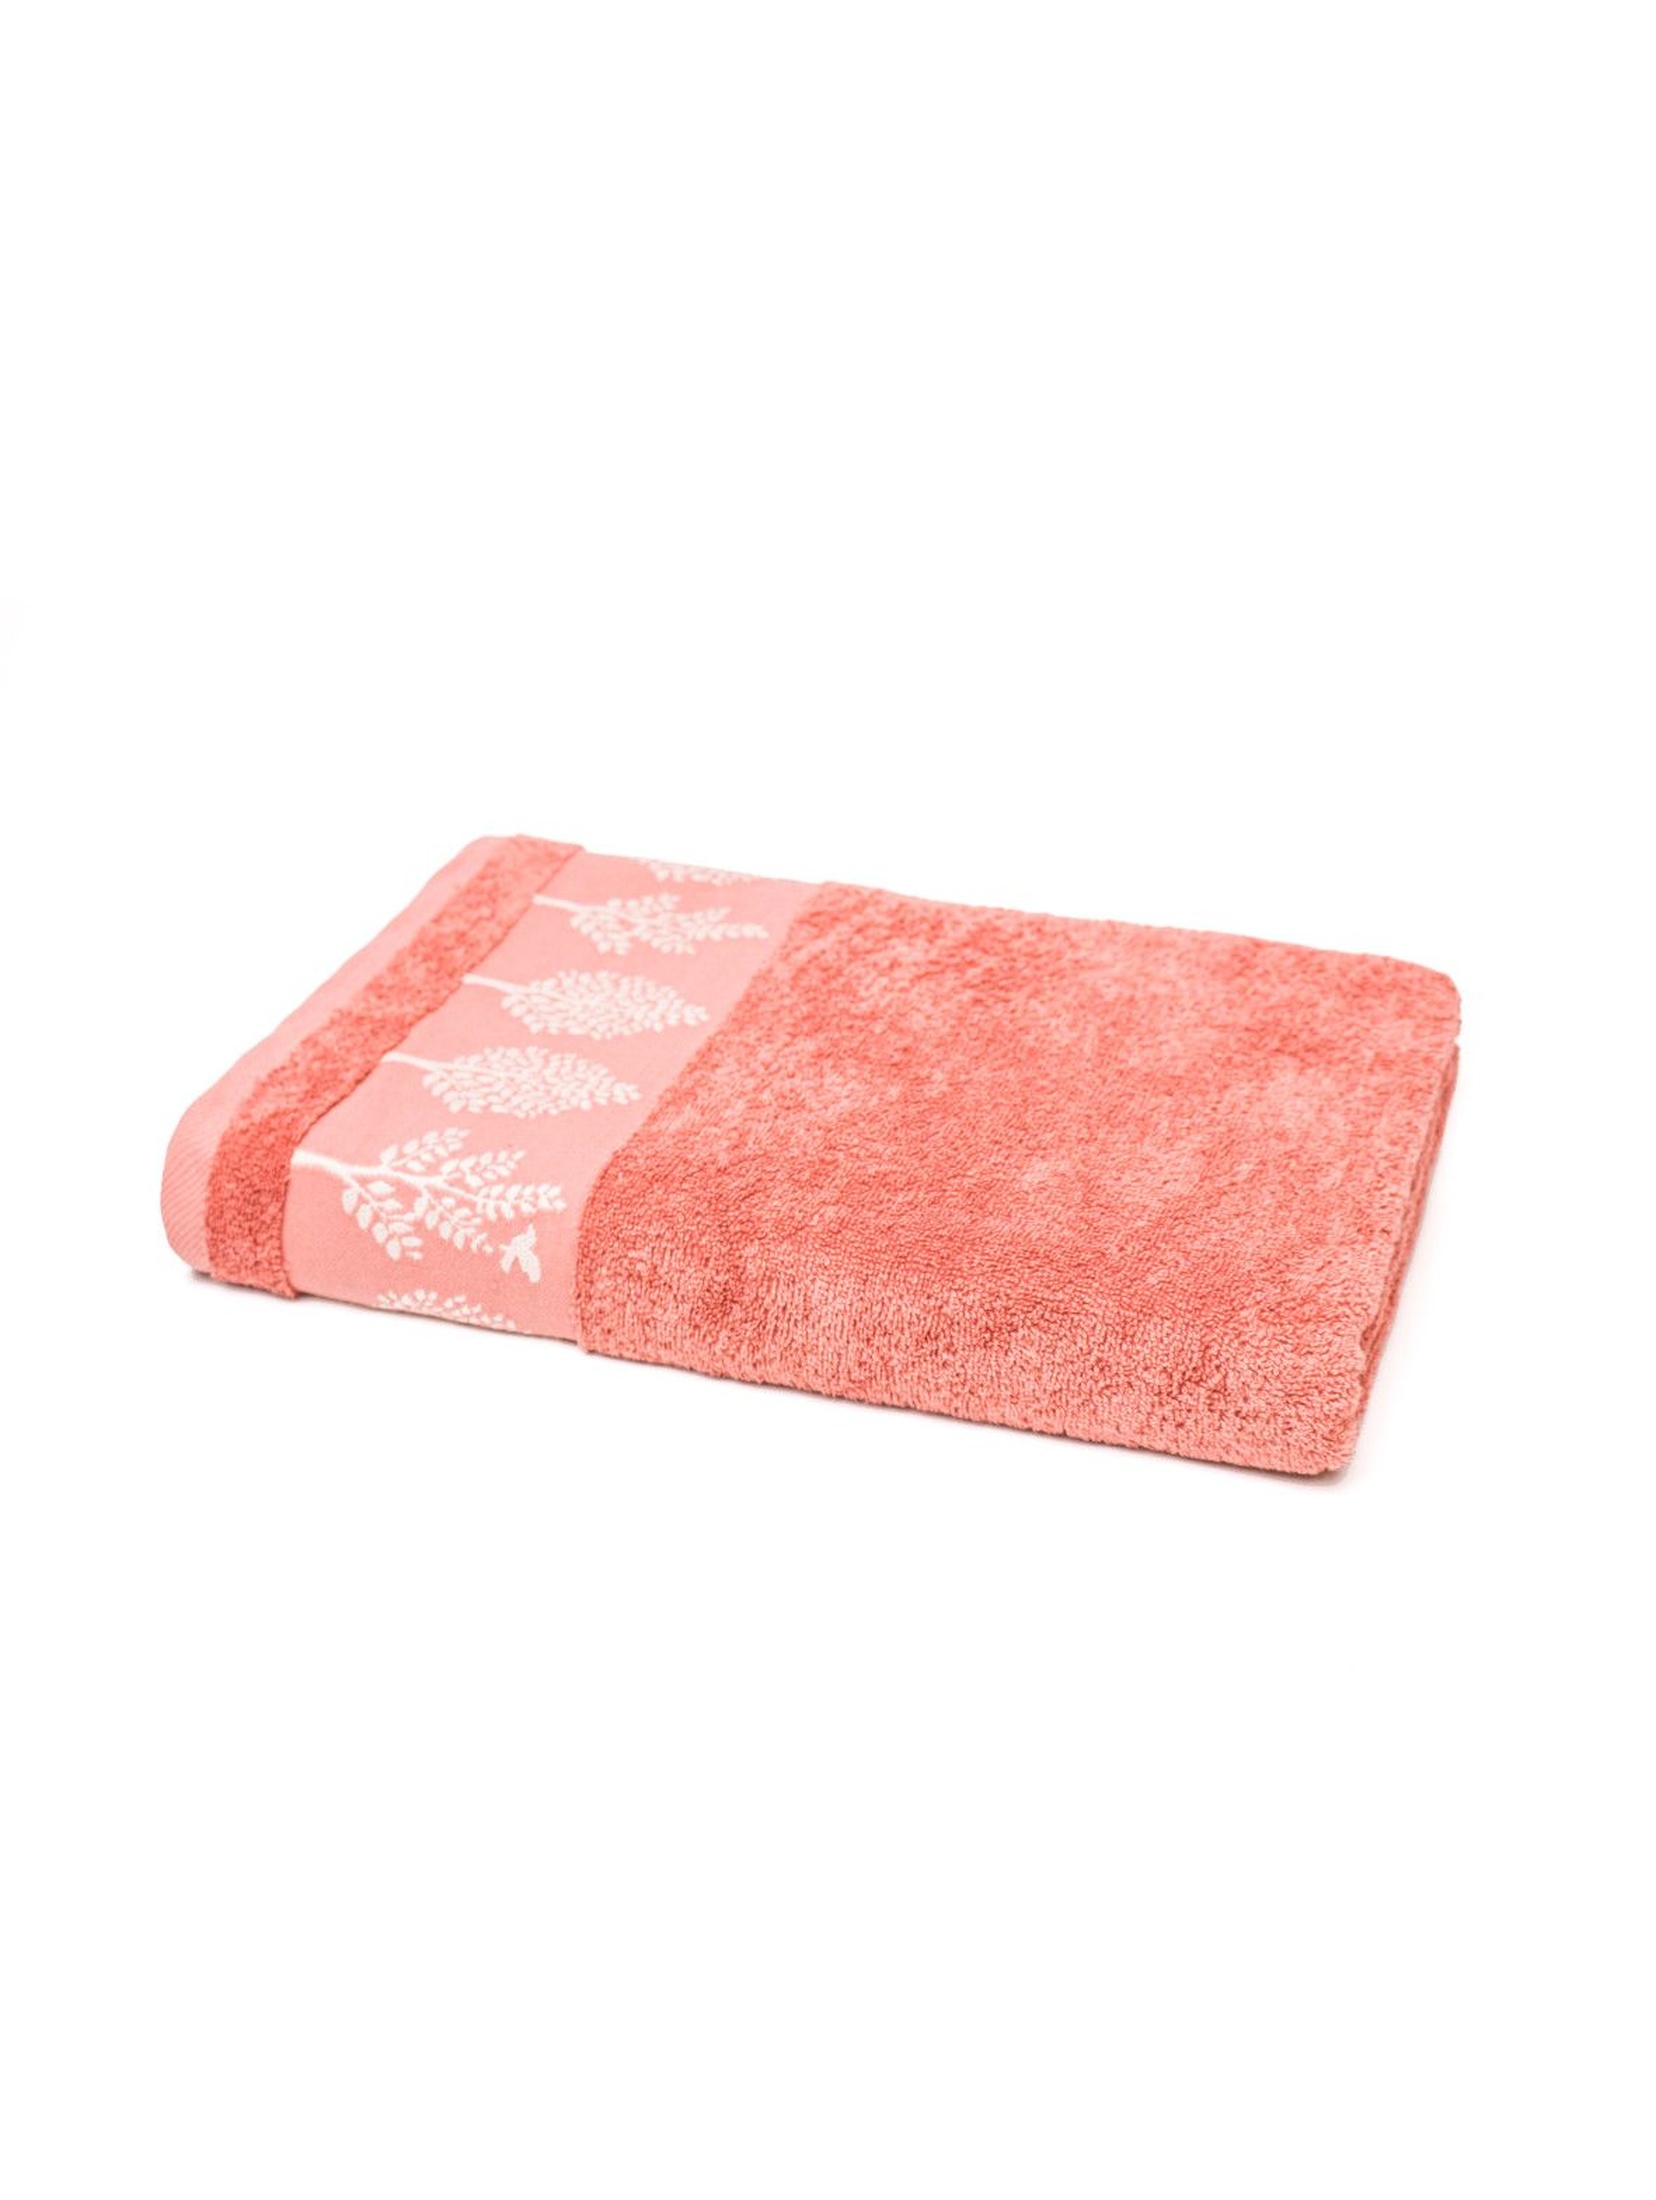 Bawełniany ręcznik w kolorze łososiowym o wymiarach 70x140 cm